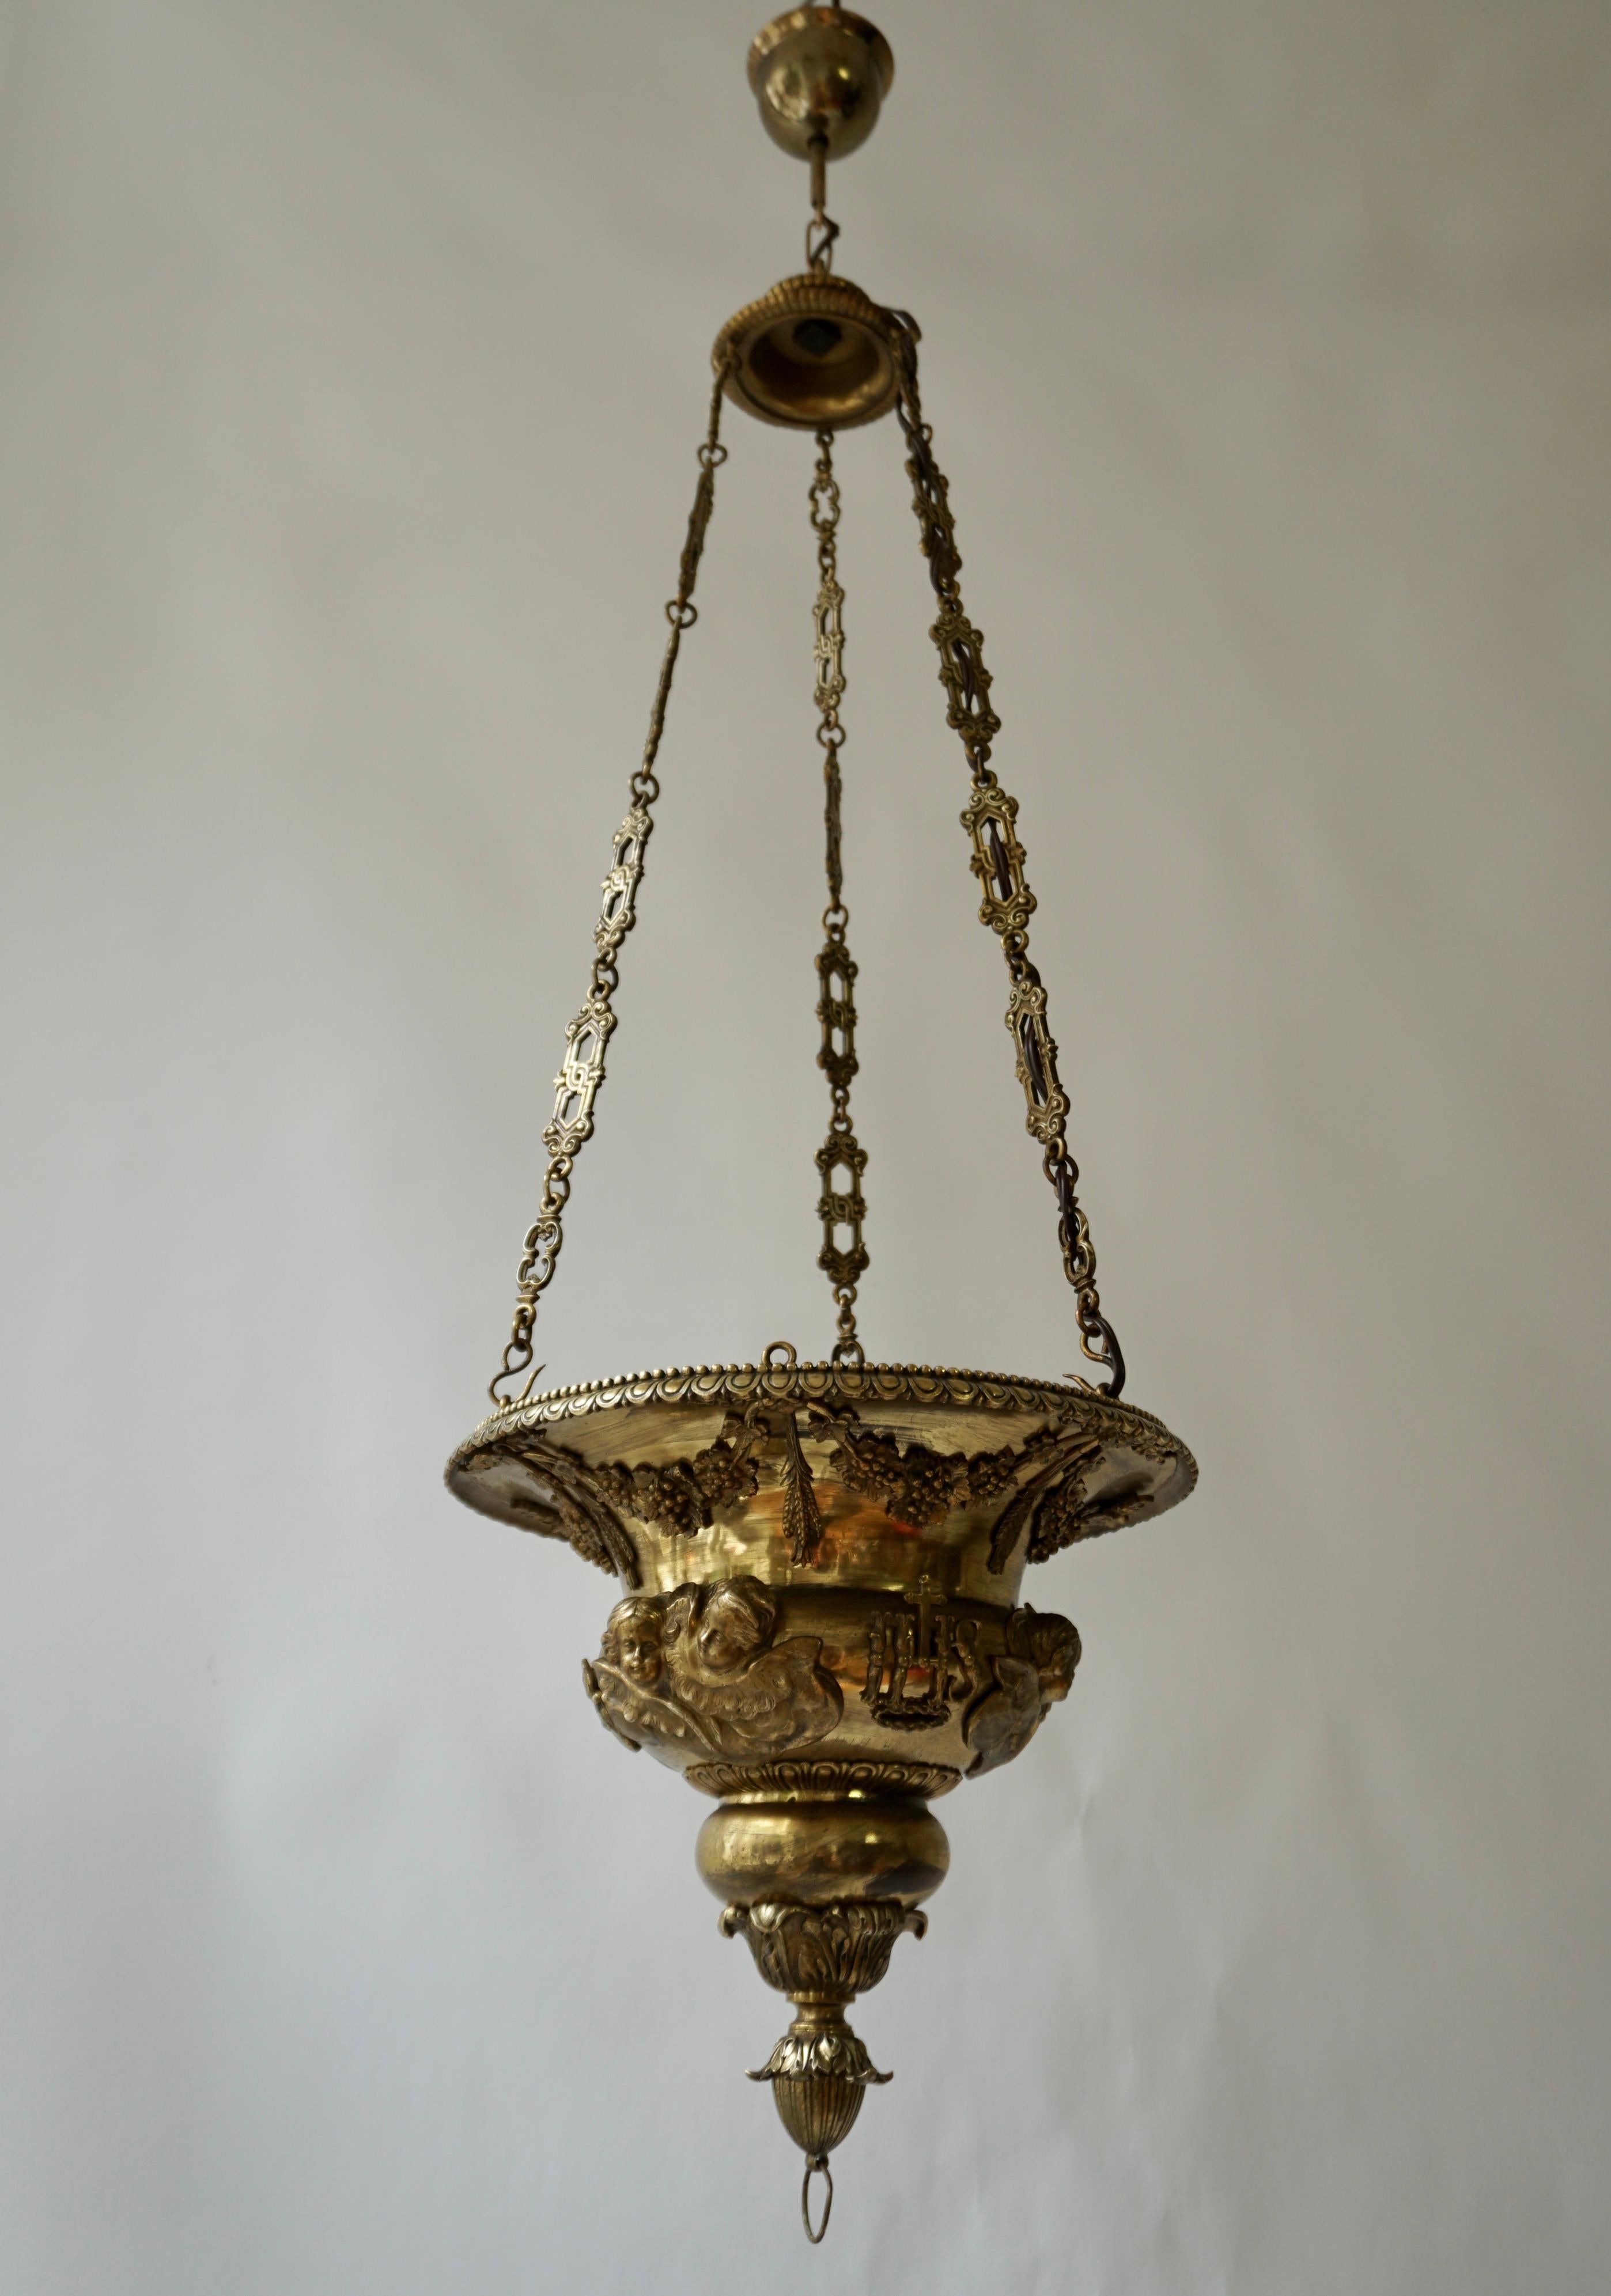 Eine barocke Altarlampe oder Weihwasserschale aus gehämmertem gelbem Kupfer. Verziert mit geflügelten Engelsköpfen und Traubenranken.

Gesamthöhe 49